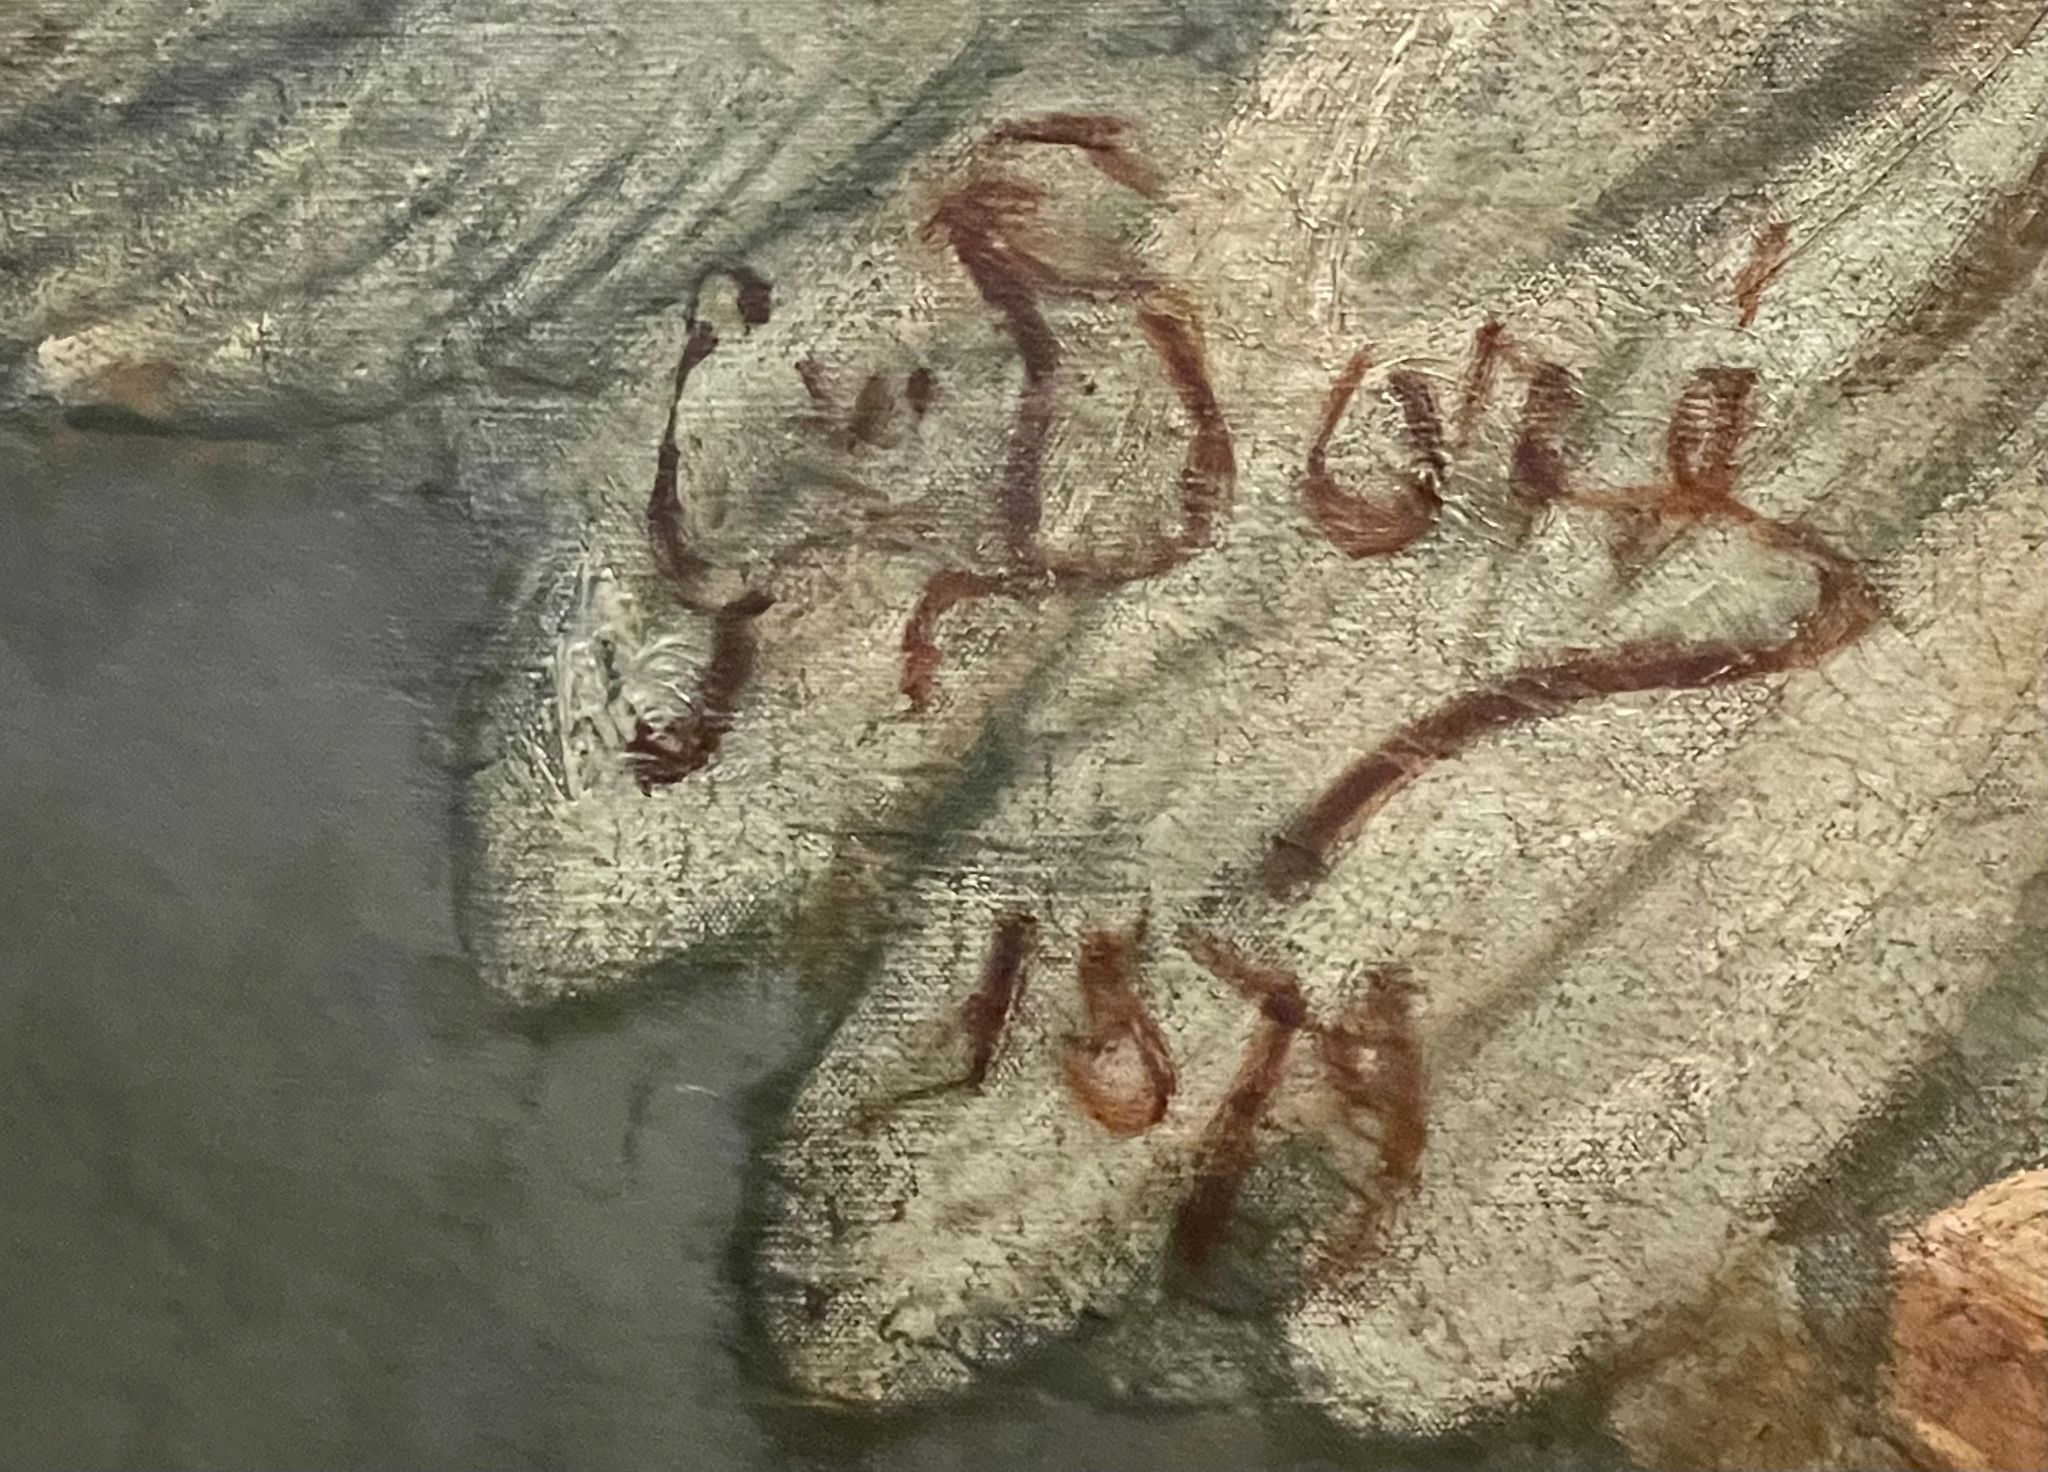 Signature de Gustave Doré